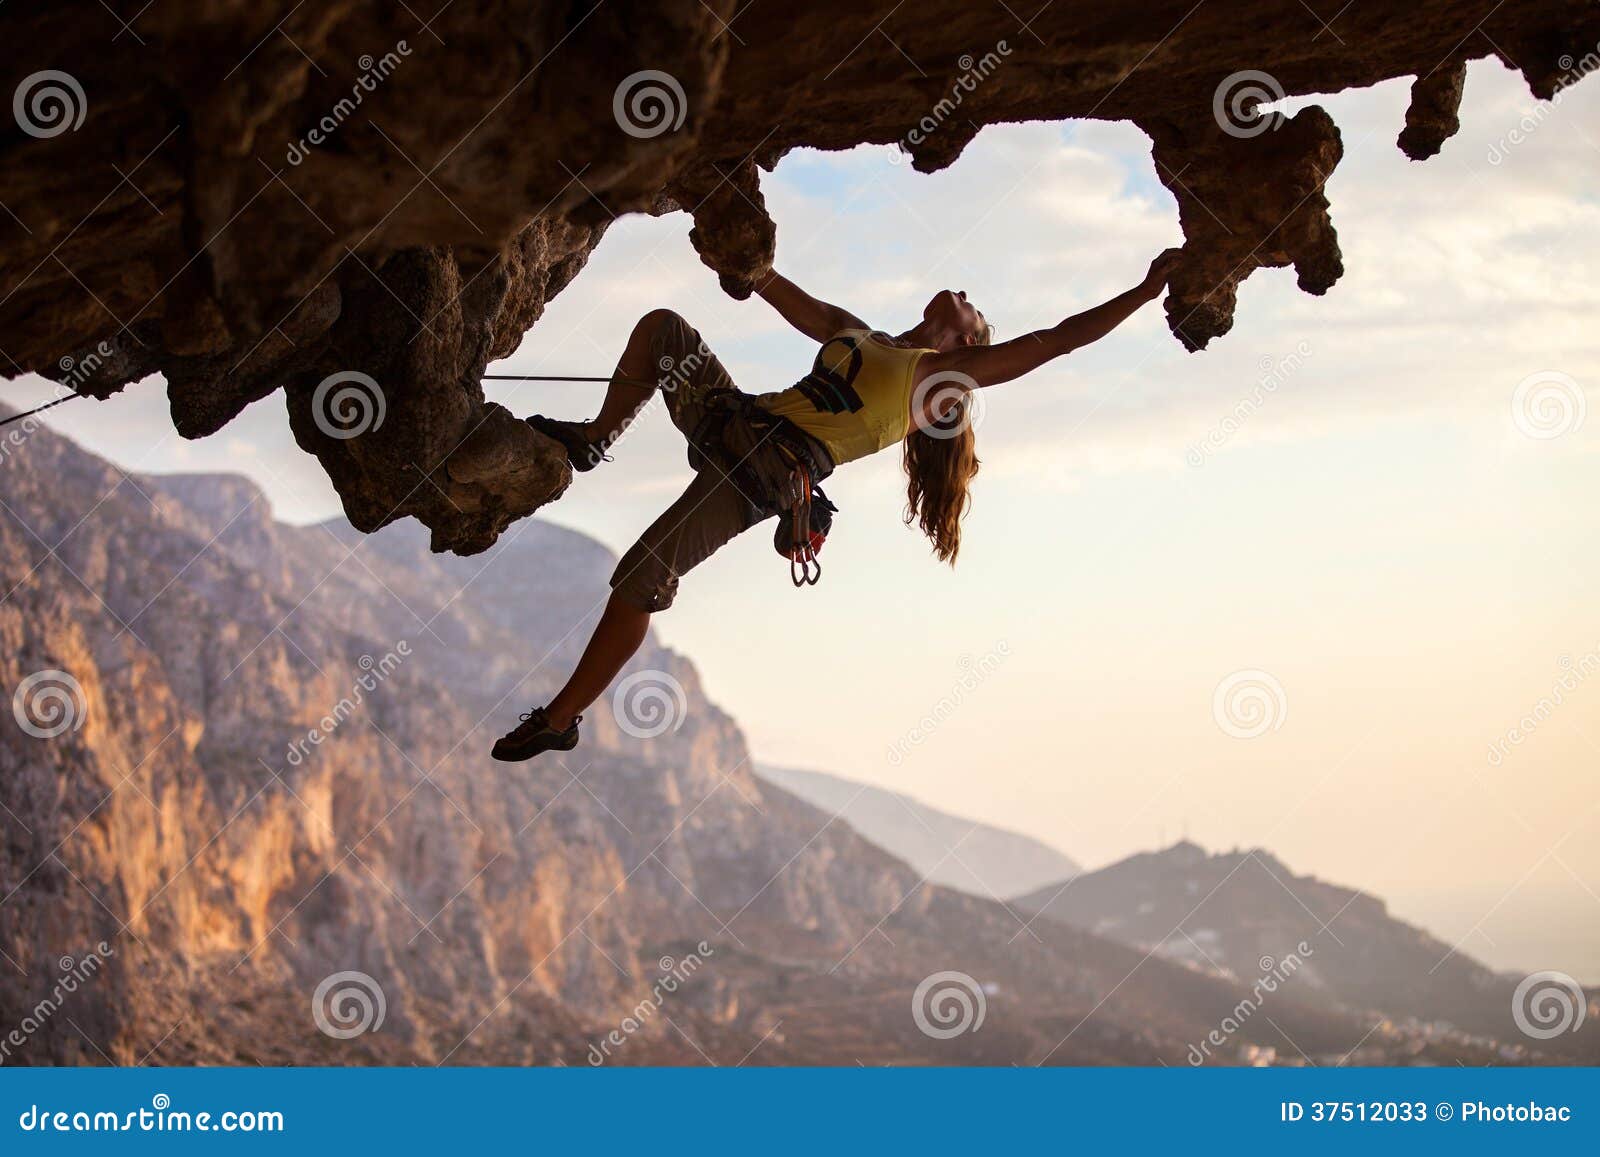 rock climber at sunset